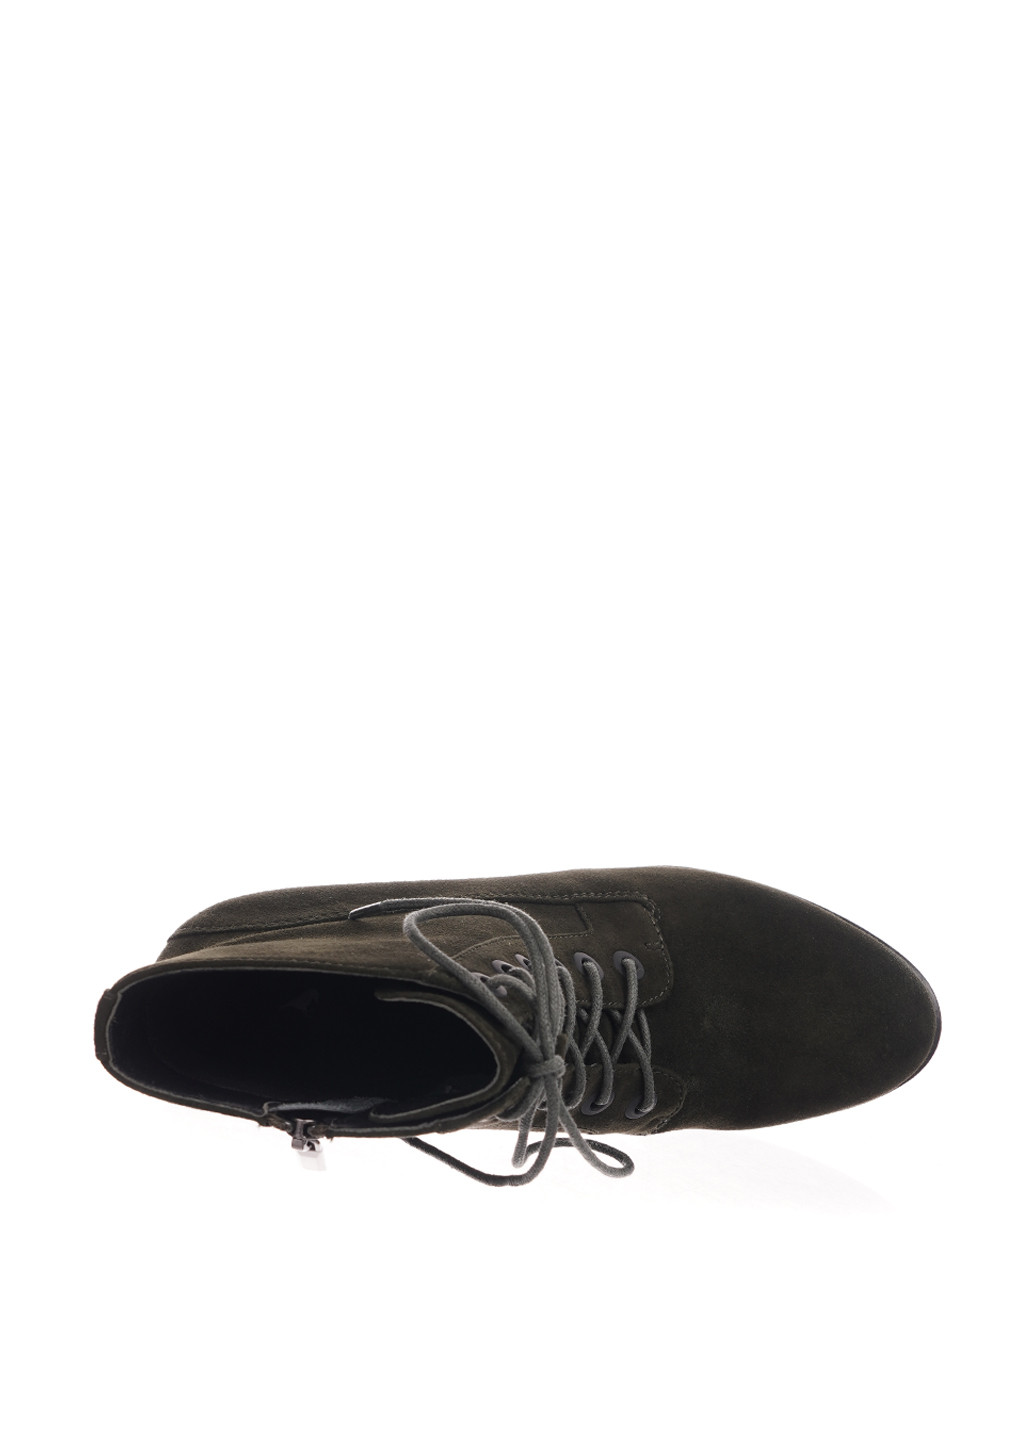 Осенние ботинки Luciano Carvari со шнуровкой из натуральной замши